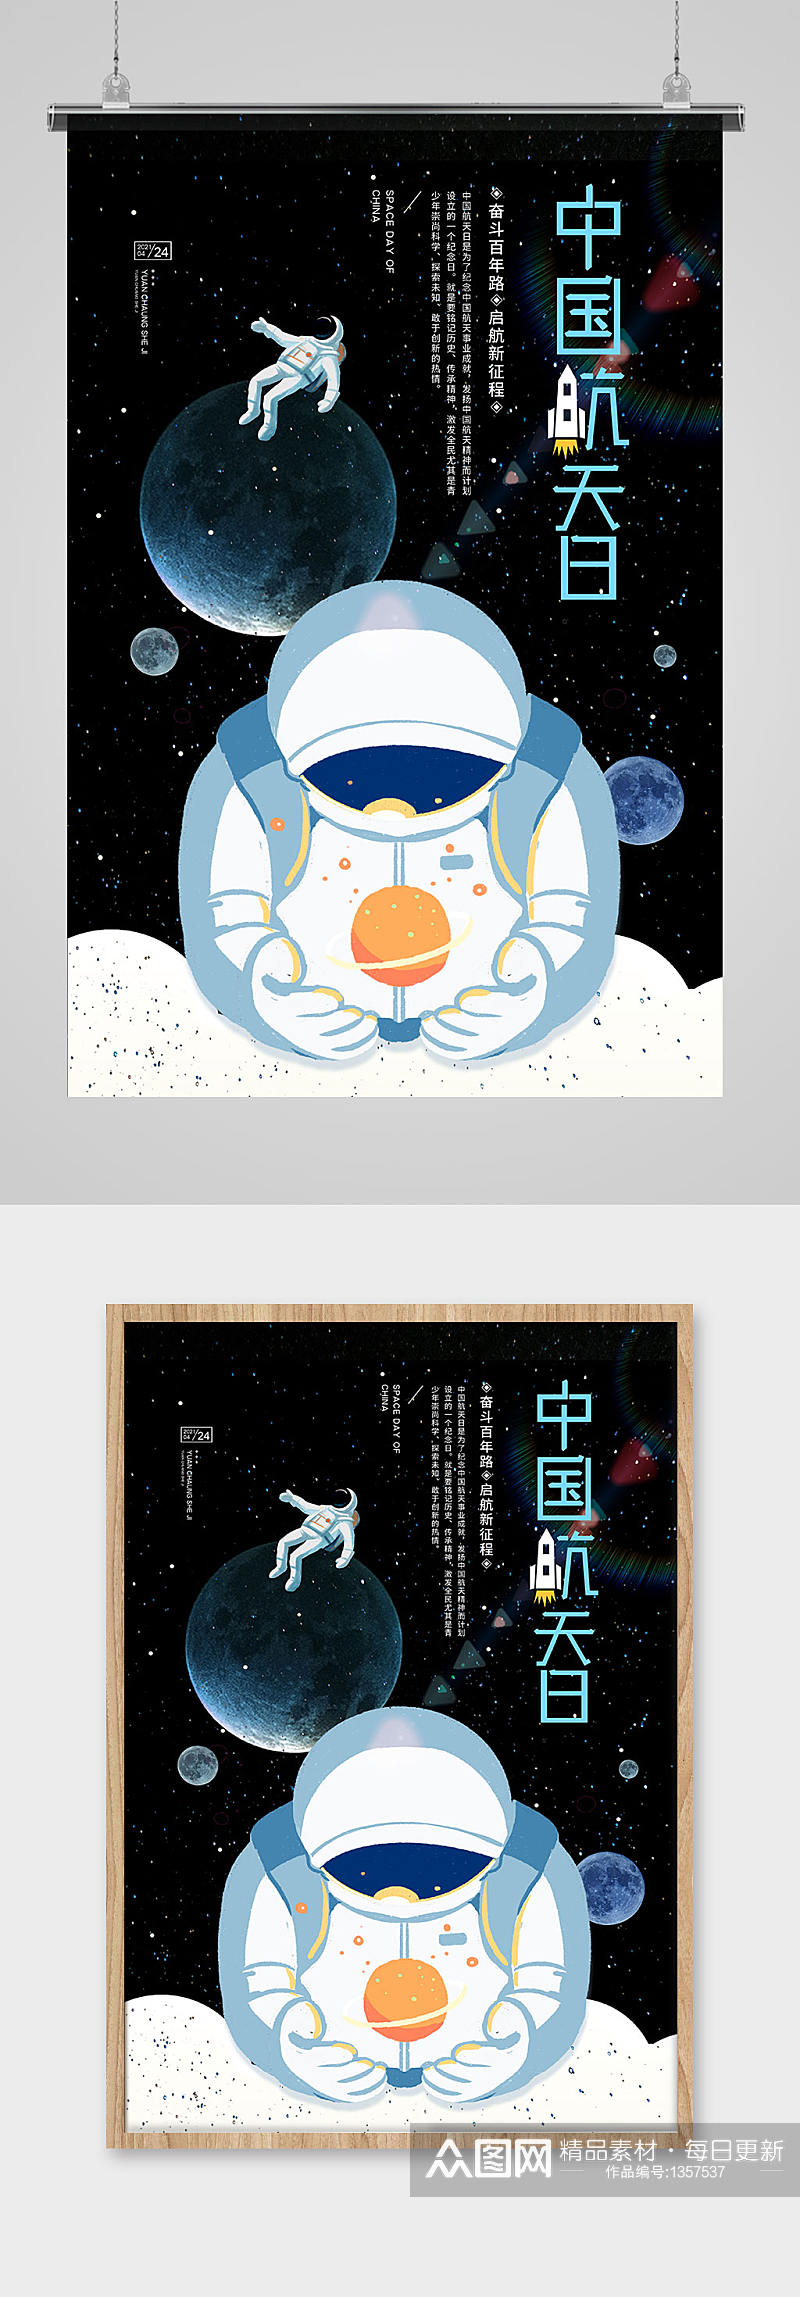 4月24日中国航天日宣传海报素材